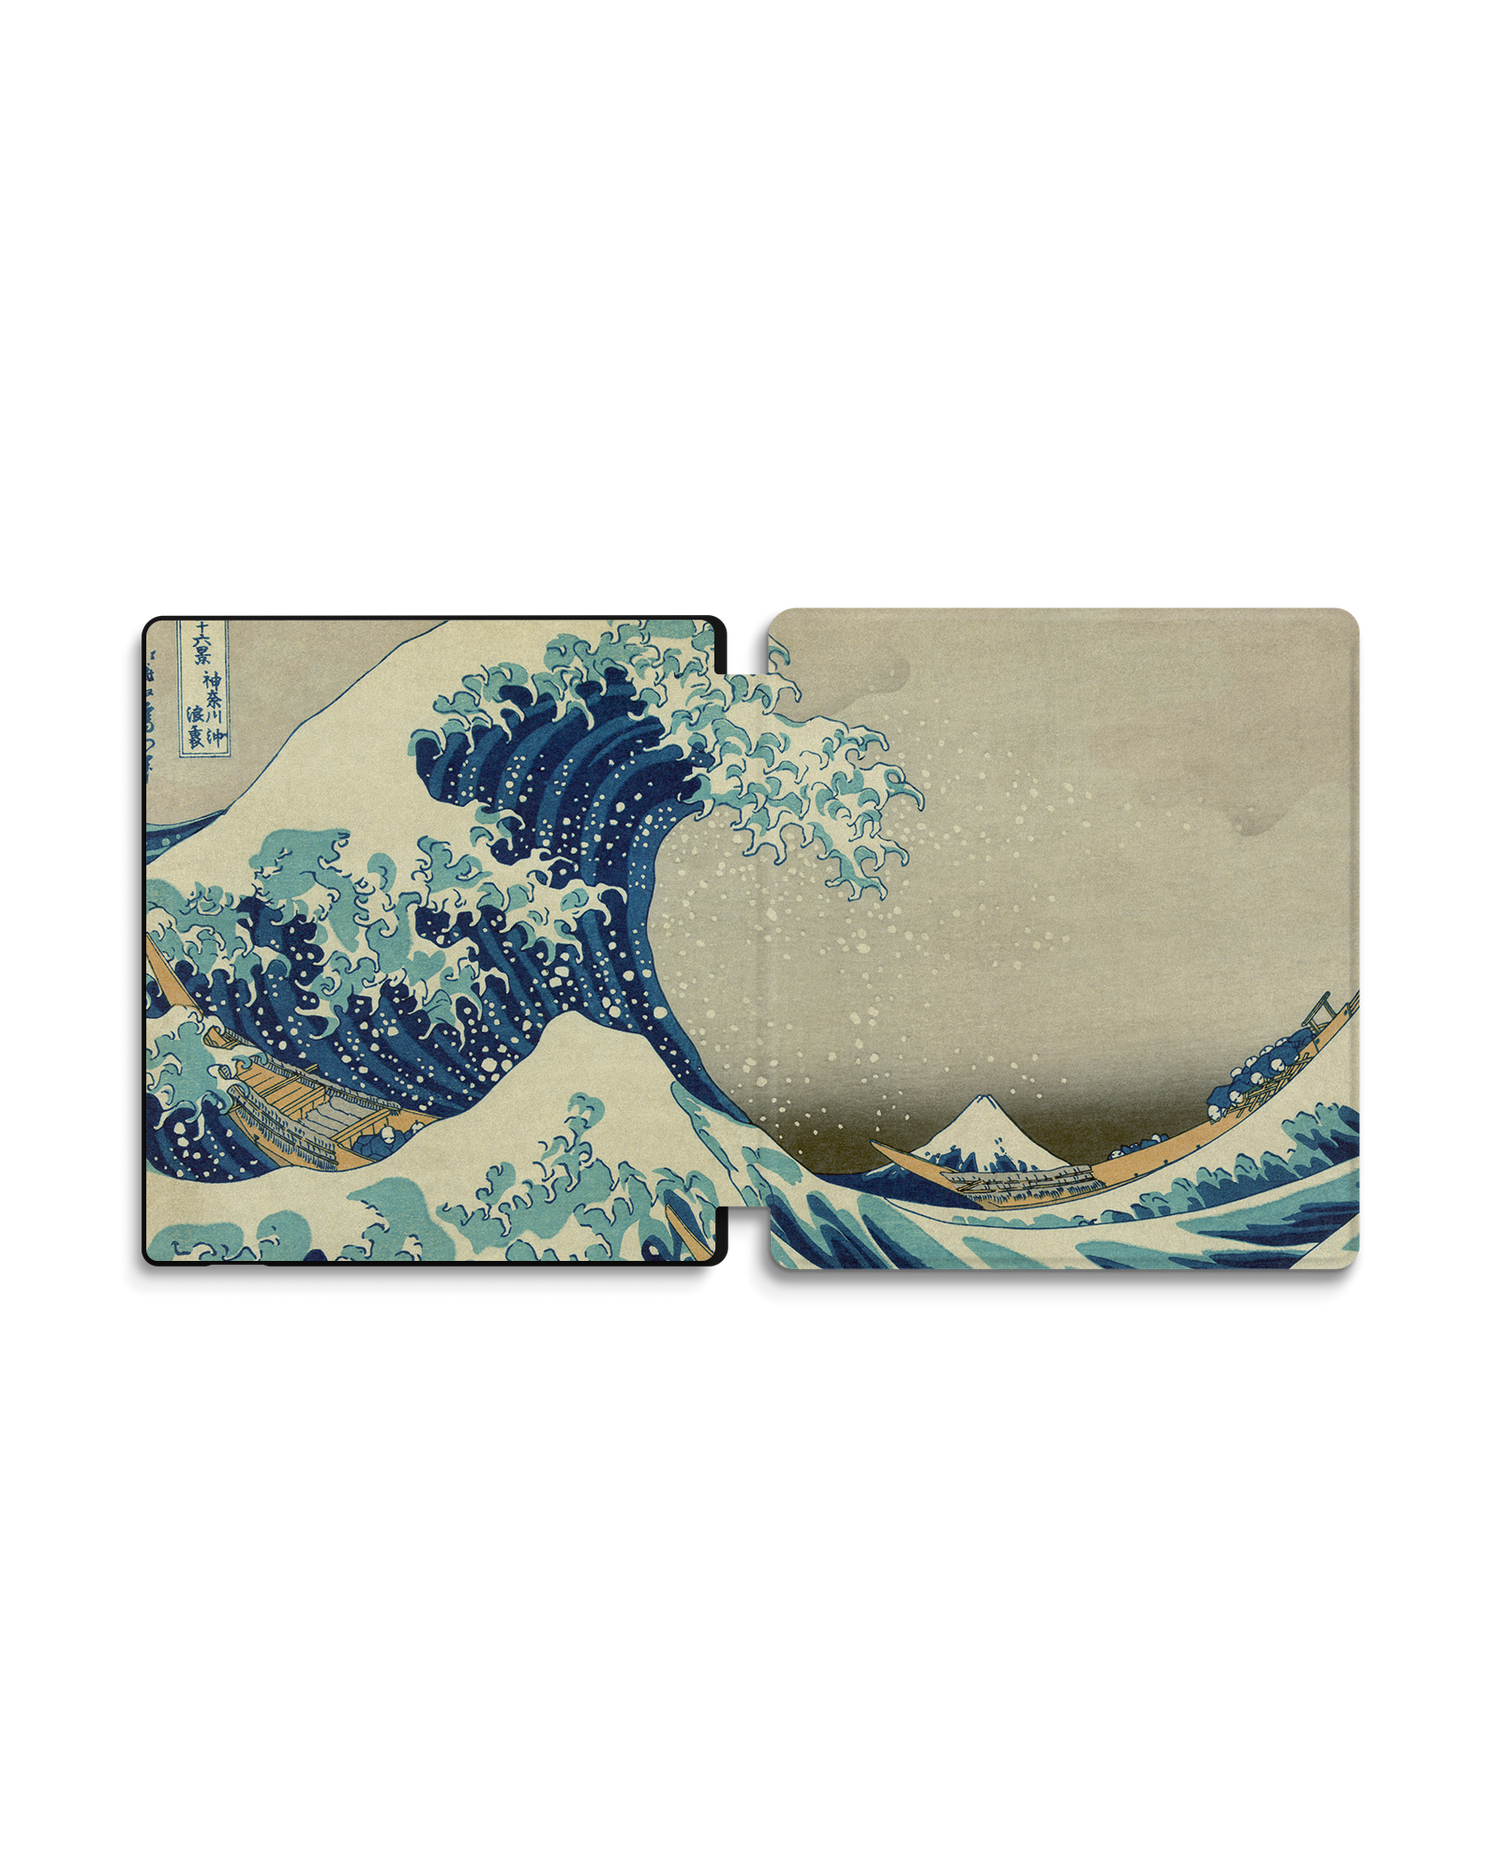 Great Wave Off Kanagawa By Hokusai eBook Reader Smart Case für Amazon Kindle Oasis: Geöffnet Außenansicht